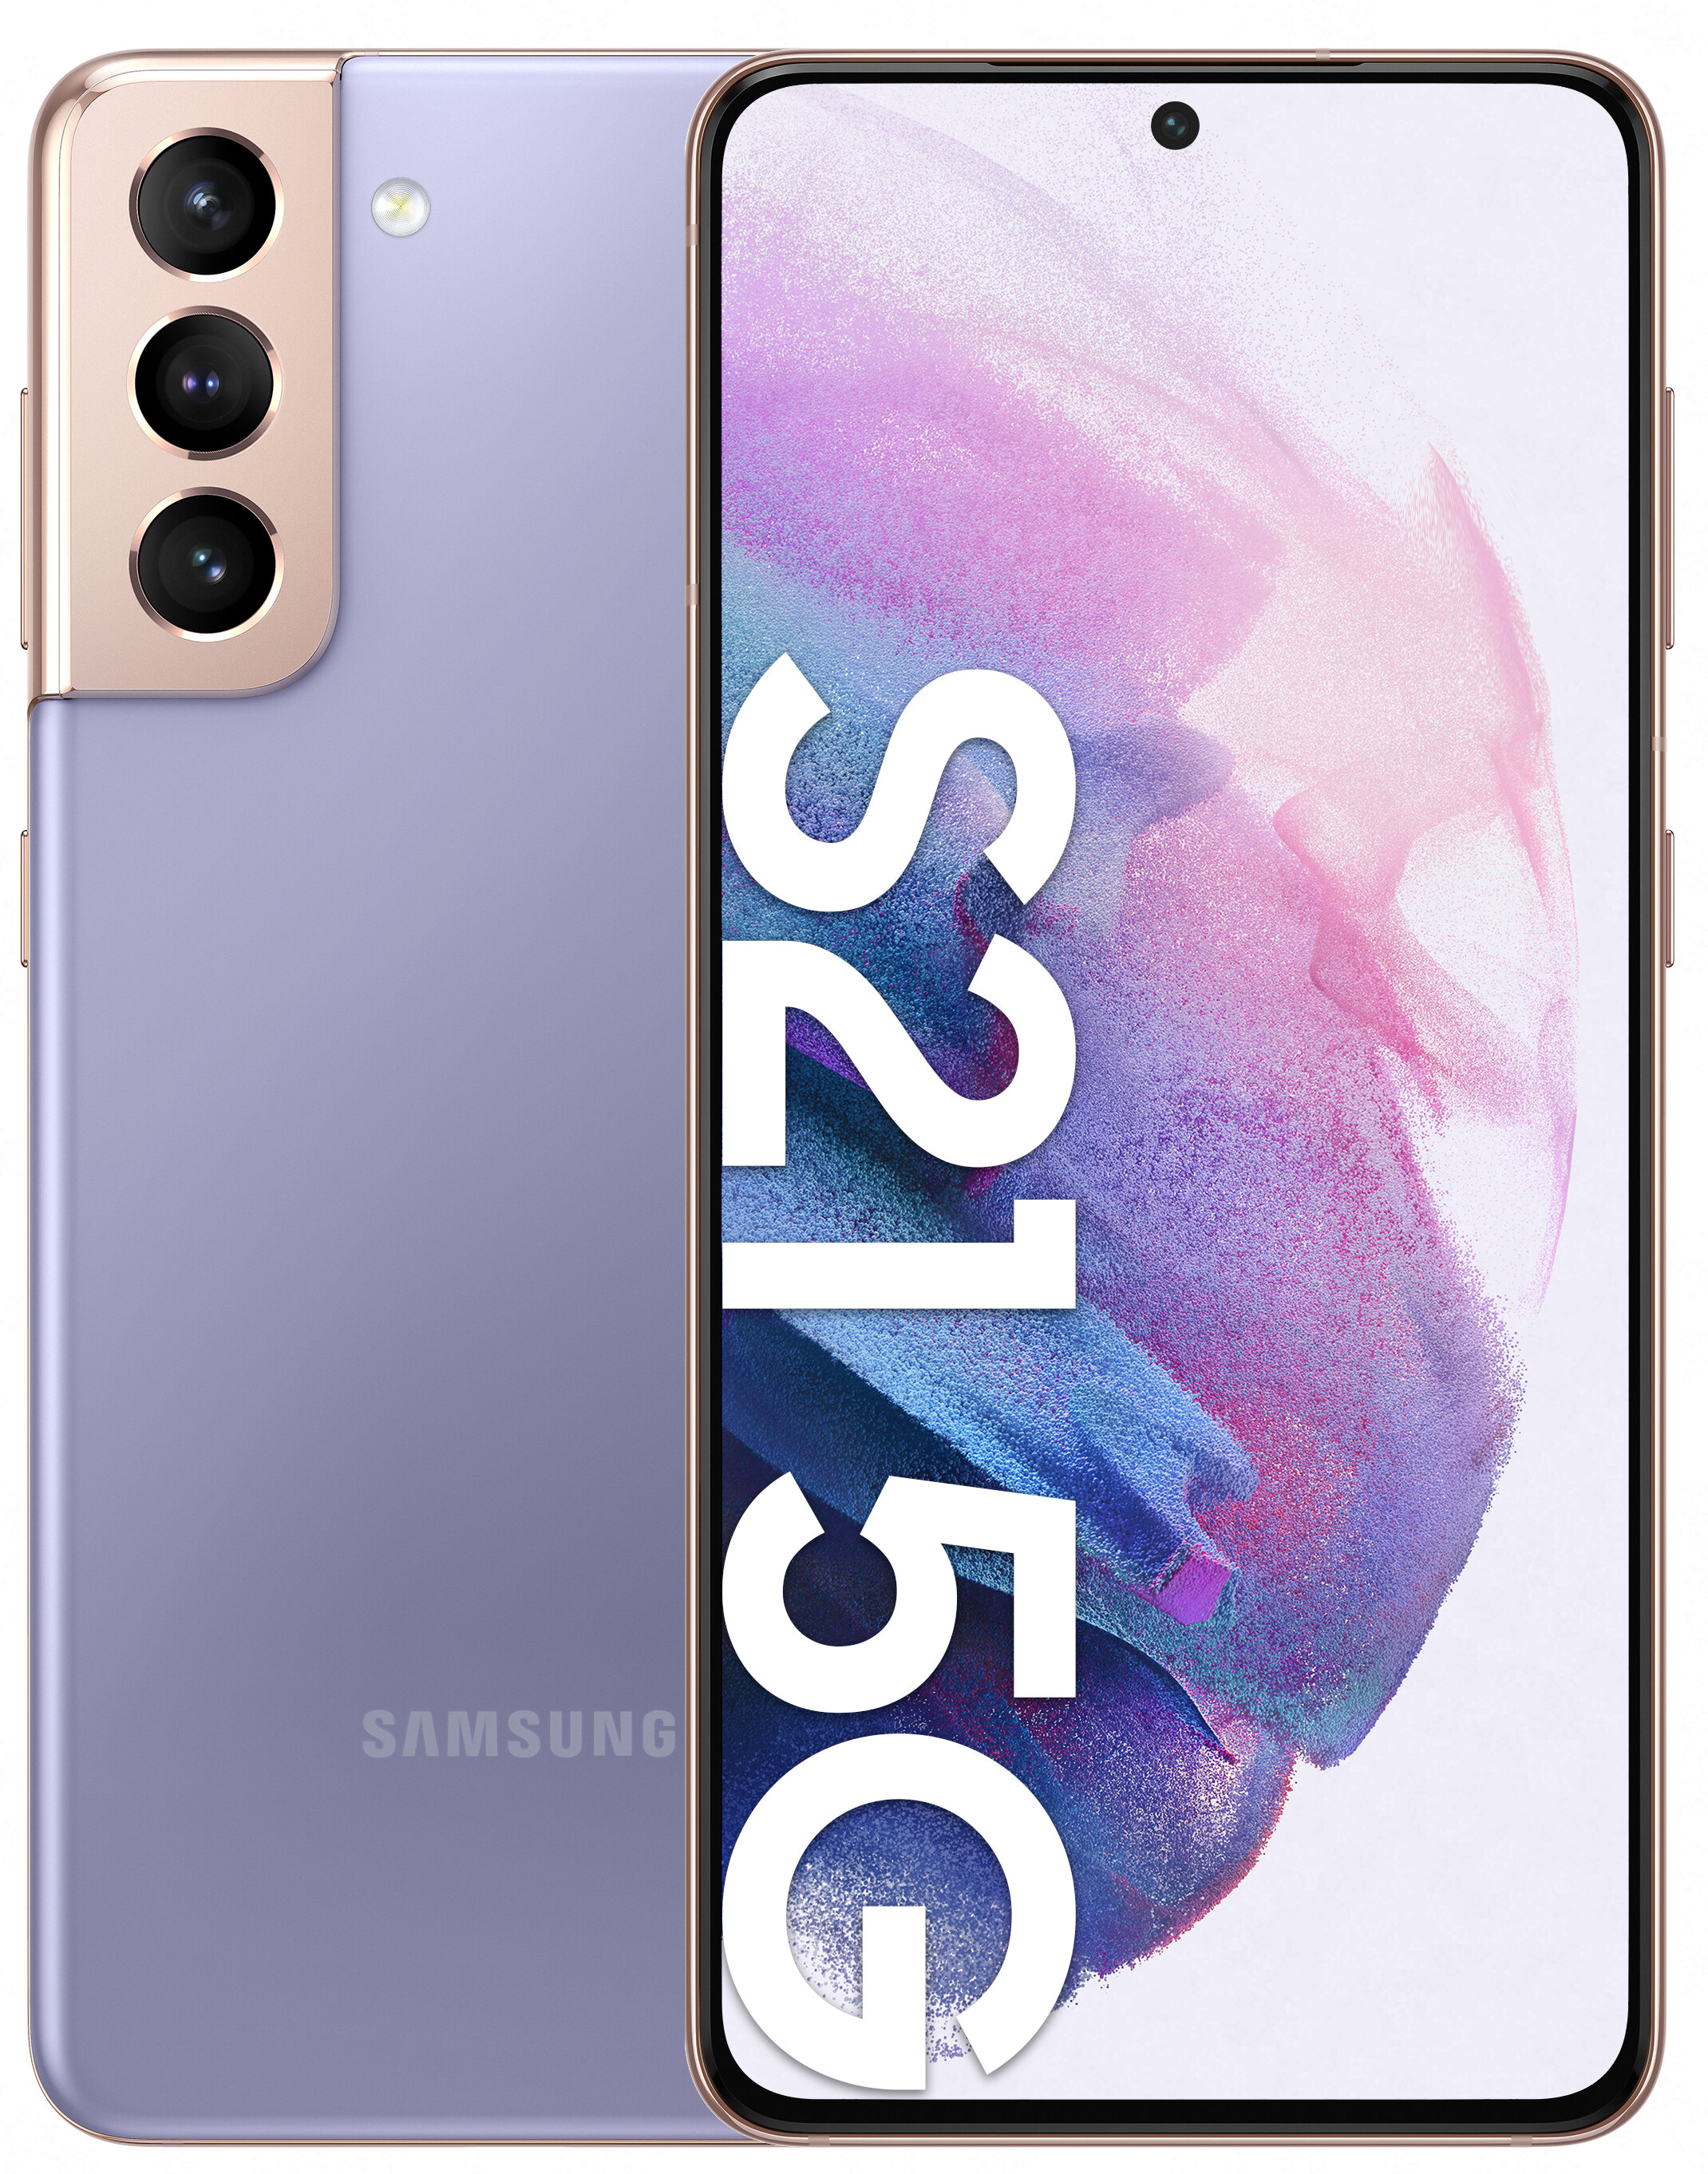 SAMSUNG Galaxy S21 8/128GB 5G 6.2" 120Hz Fioletowy SM-G991 Smartfon -  niskie ceny i opinie w Media Expert